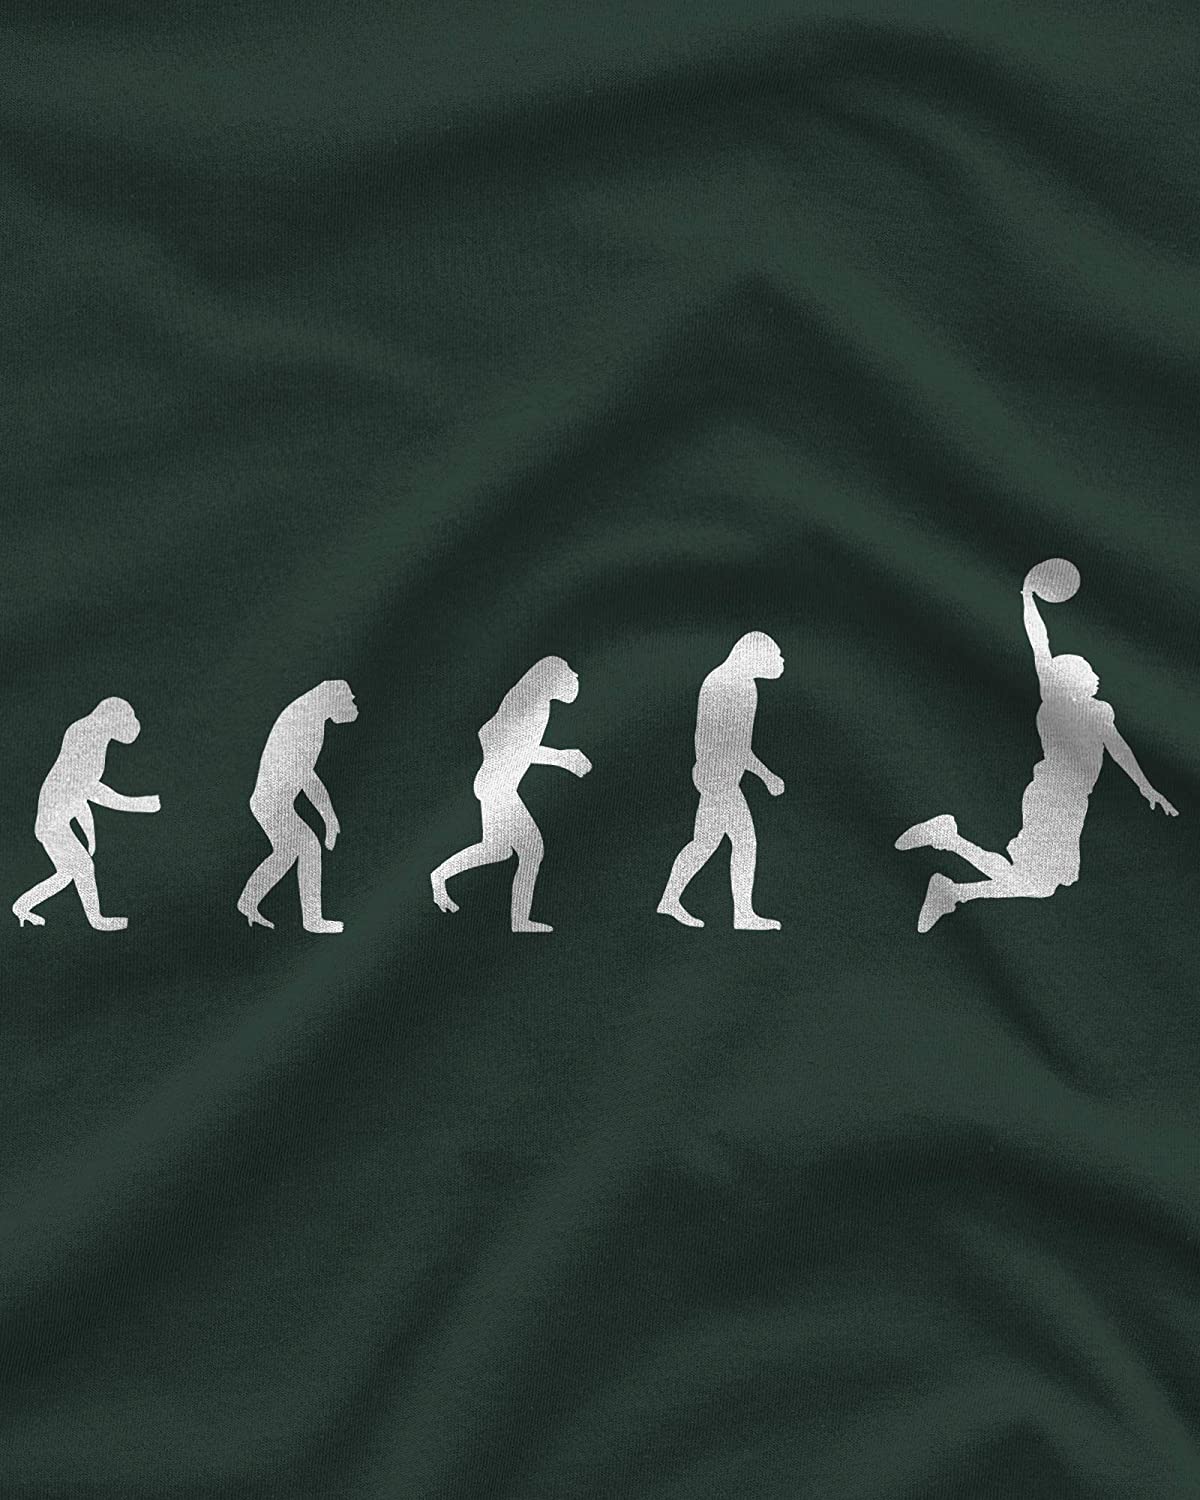 NXY Camiseta de evolución de hombre a jugador de baloncesto para hombre, de cavernícola a Dunker Tee